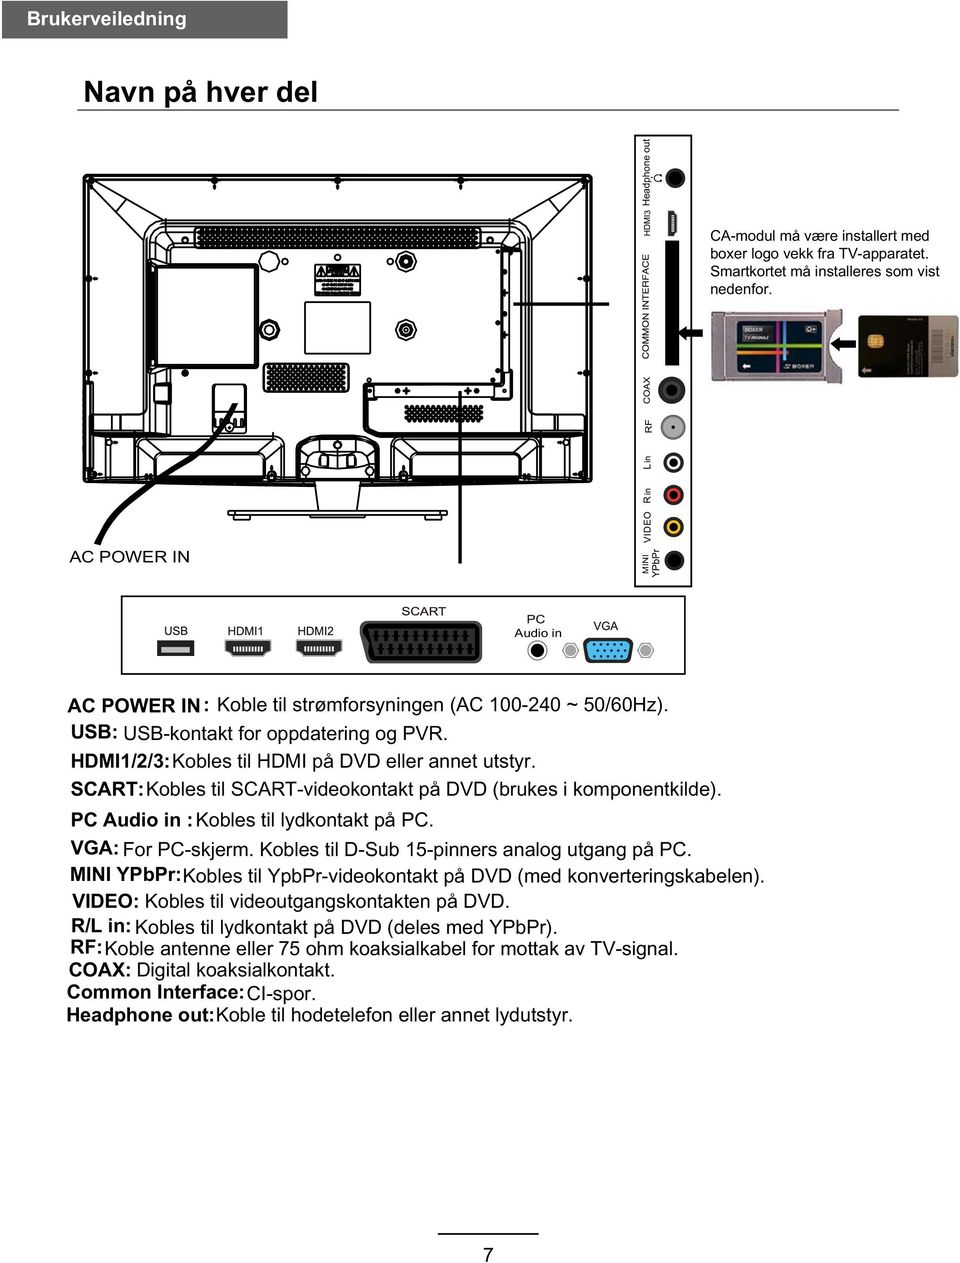 SCART: Kobles til SCART-videokontakt på DVD (brukes i komponentkilde). PC Audio in : Kobles til lydkontakt på PC. VGA: For PC-skjerm. Kobles til D-Sub 15-pinners analog utgang på PC.